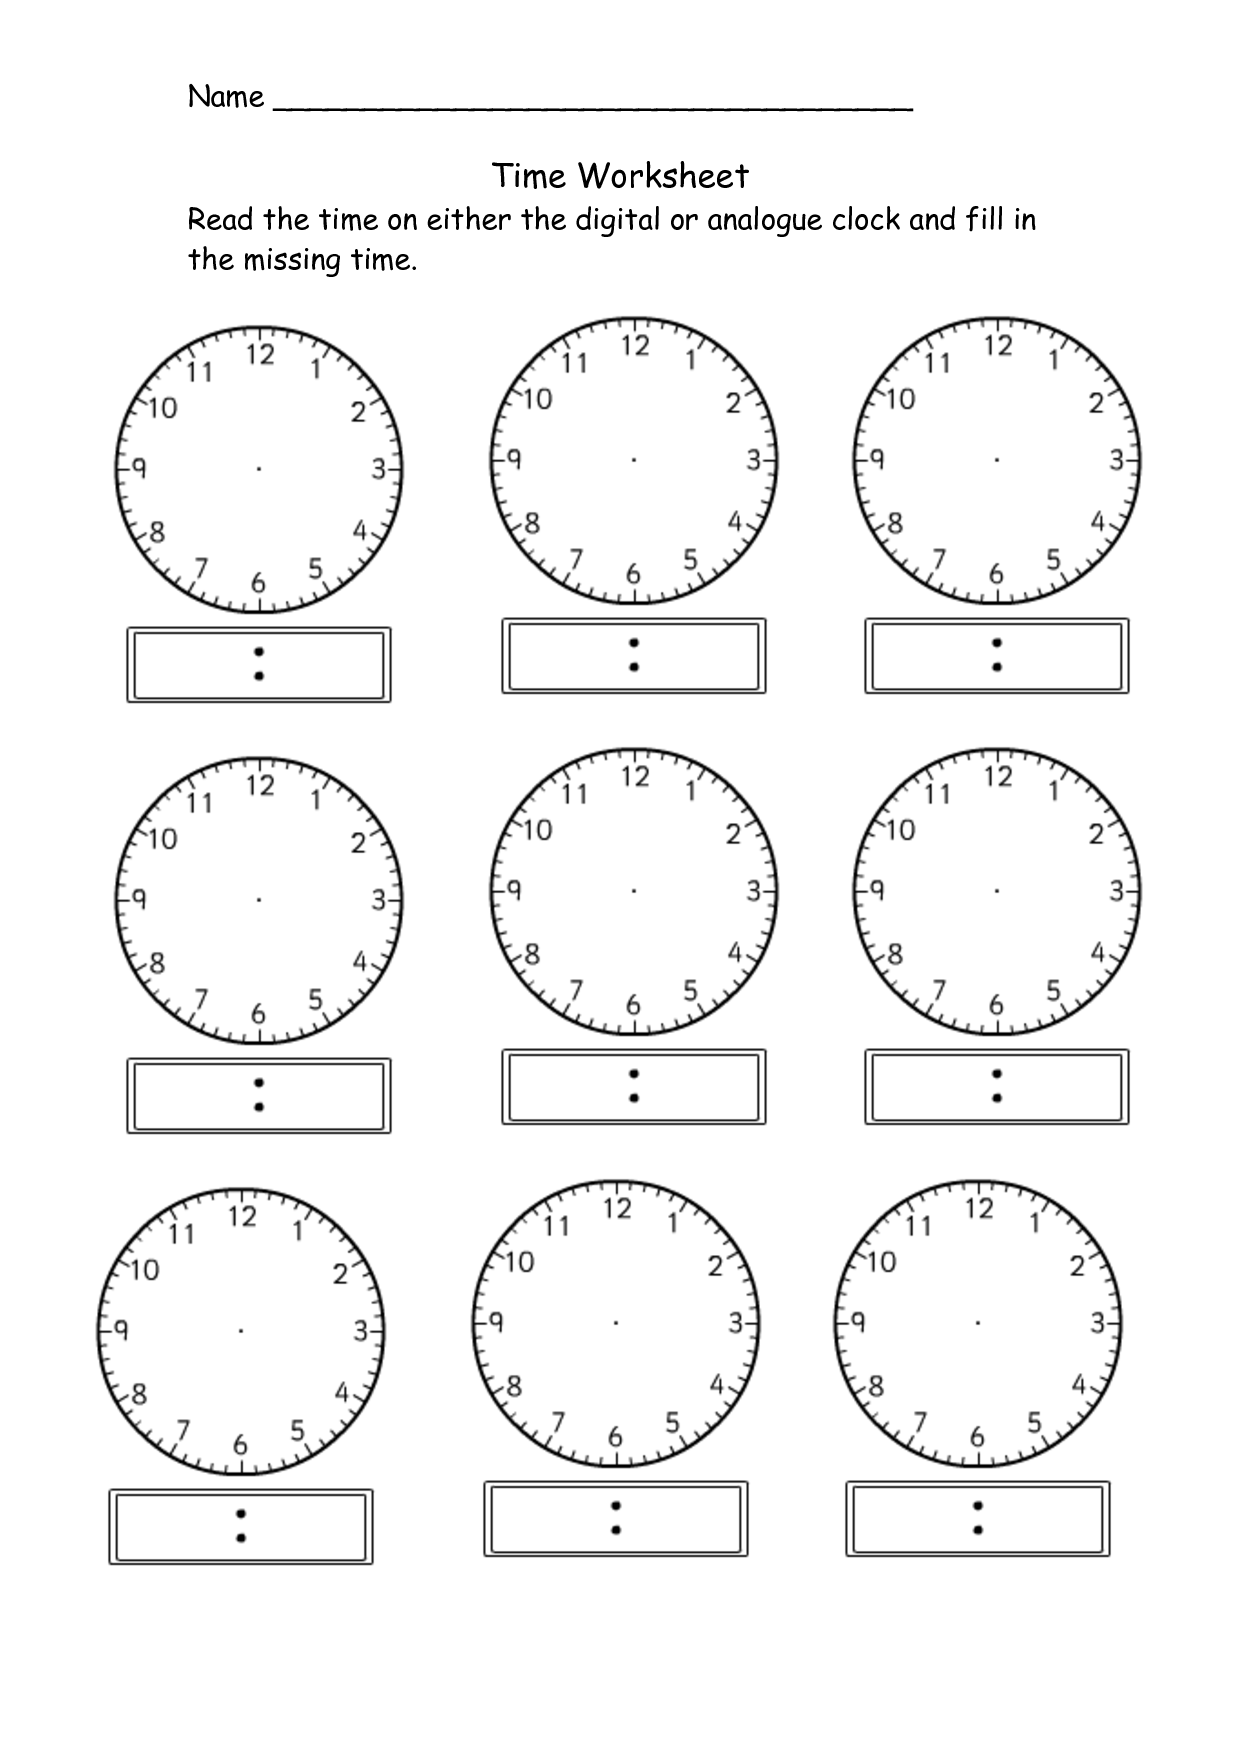 15 Images of Digital Clock Worksheets